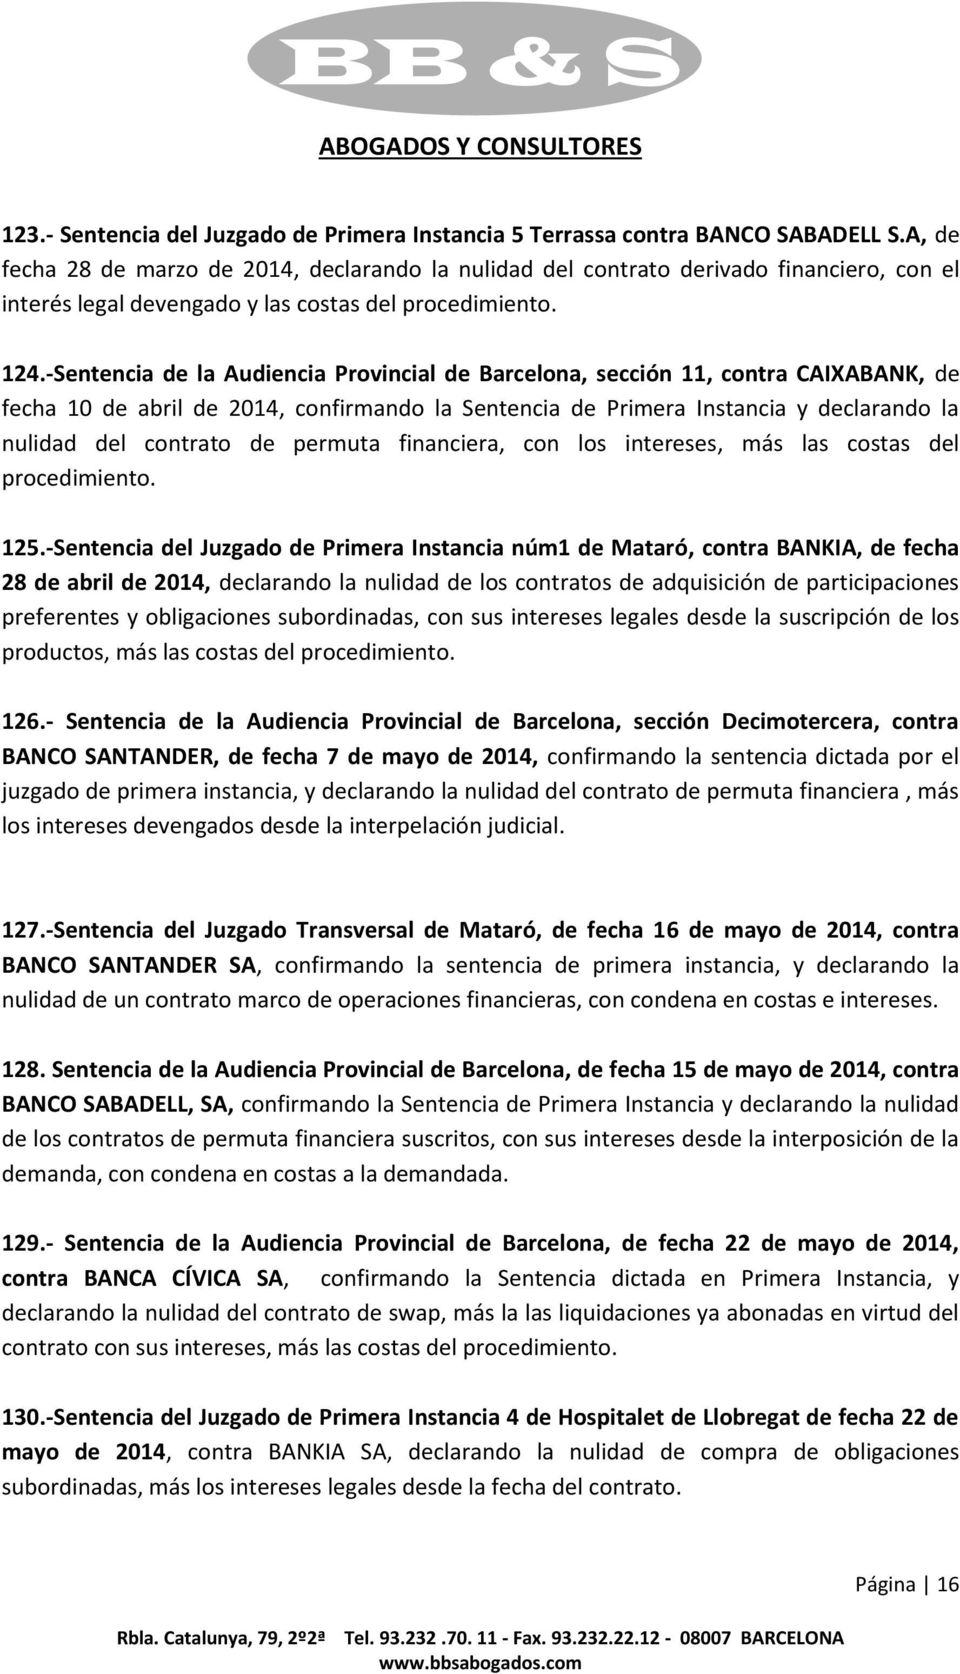 -Sentencia de la Audiencia Provincial de Barcelona, sección 11, contra CAIXABANK, de fecha 10 de abril de 2014, confirmando la Sentencia de Primera Instancia y declarando la nulidad del contrato de